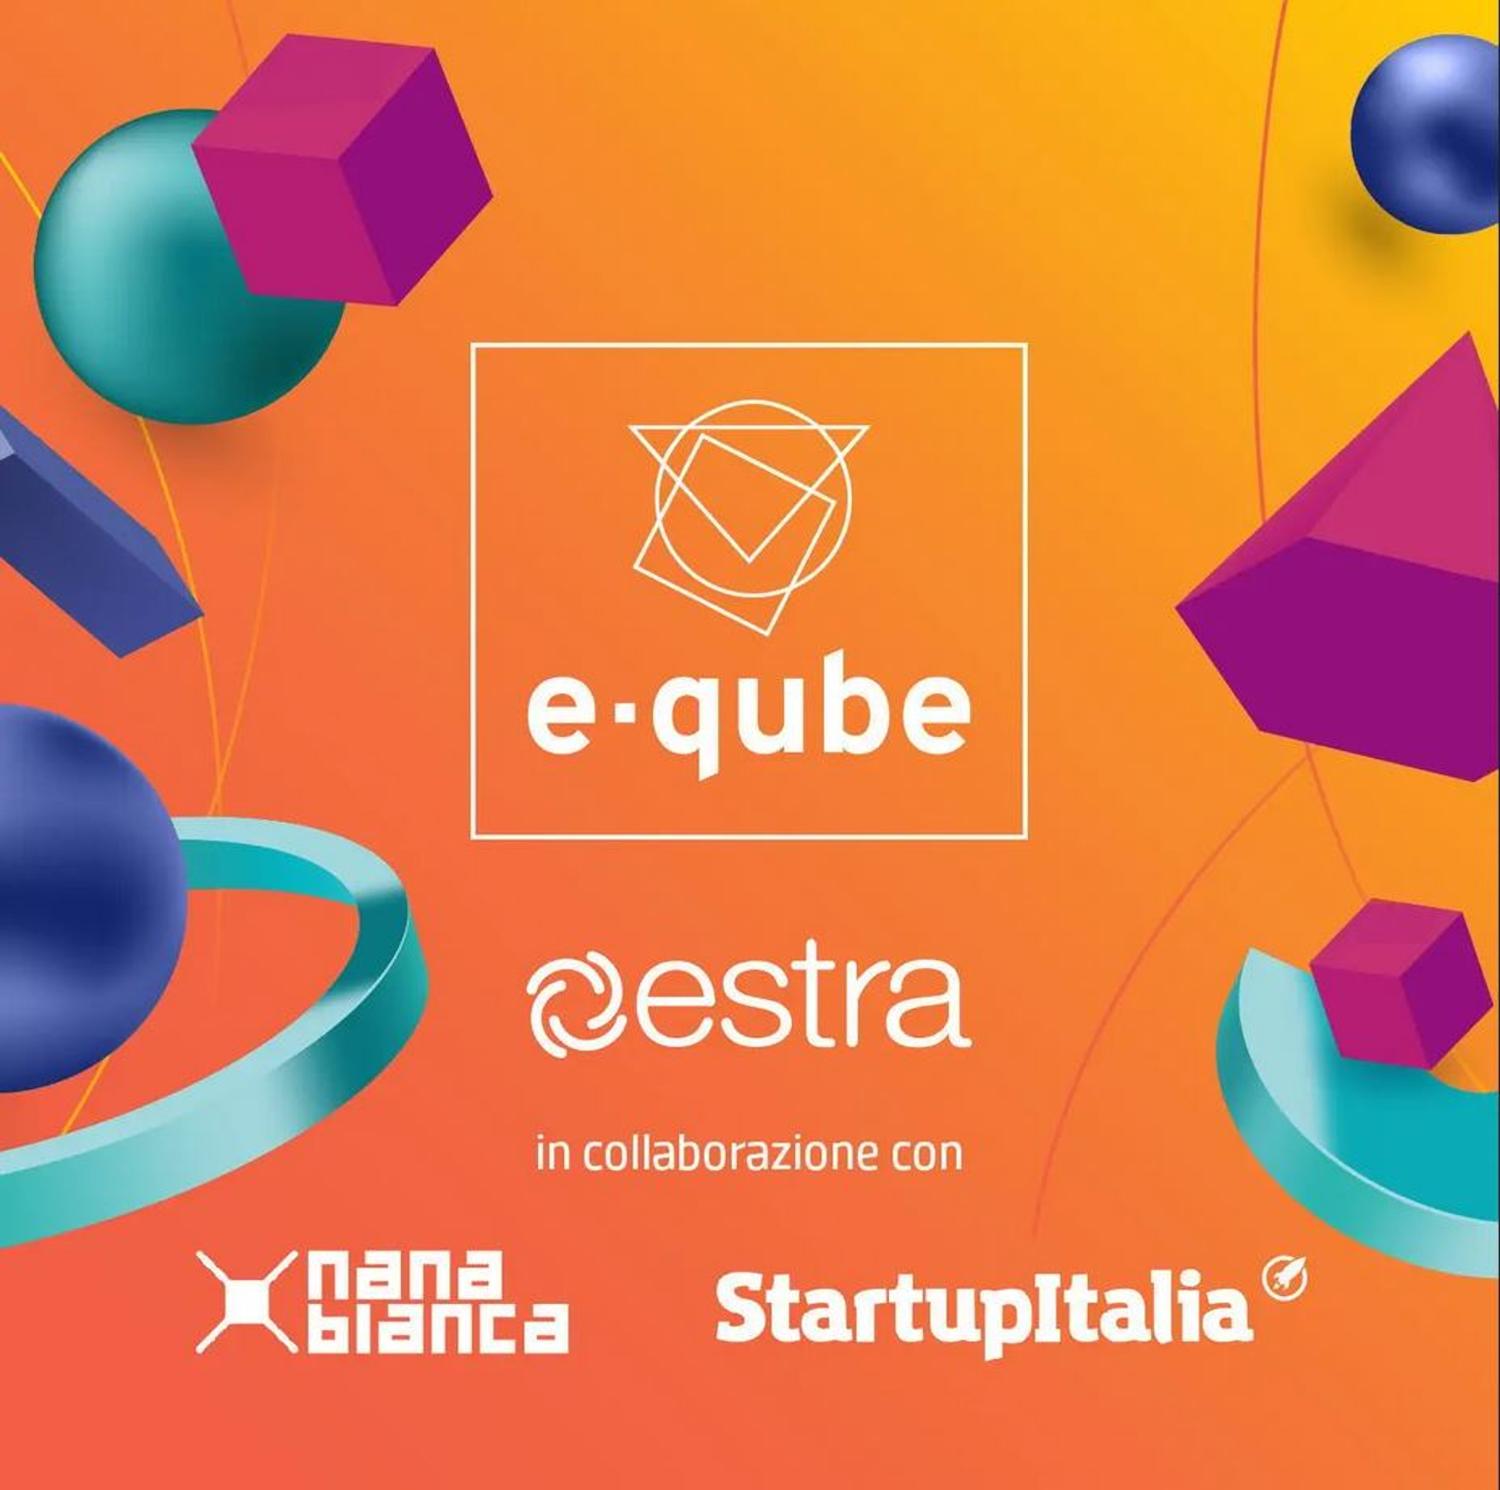 Al via E-qube Startup&idea Challenge, progetti innovativi per l’energia digitale del futuro